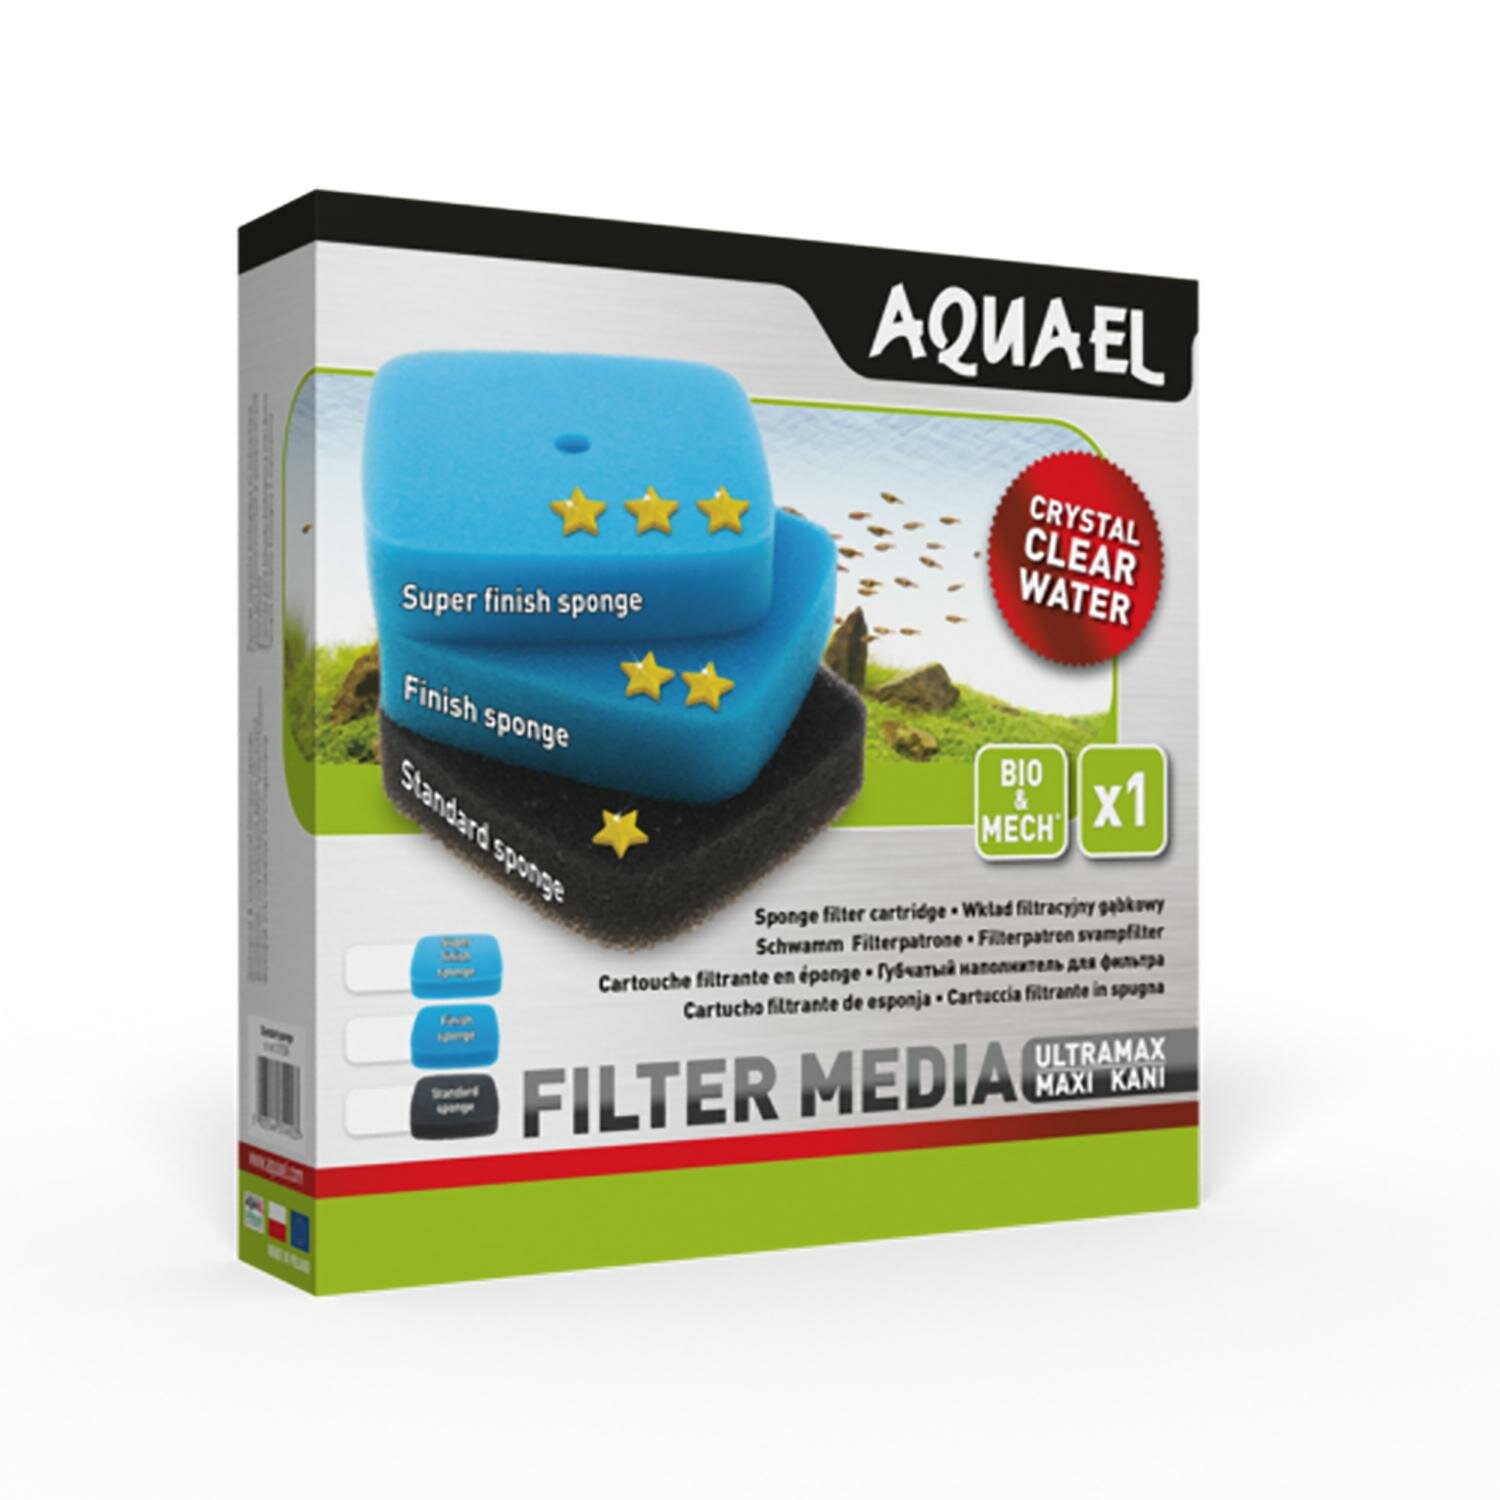 Aquael Губка для фильтра ULTRAMAX/MAXI KANI PPI30 среднепористая - фото №4